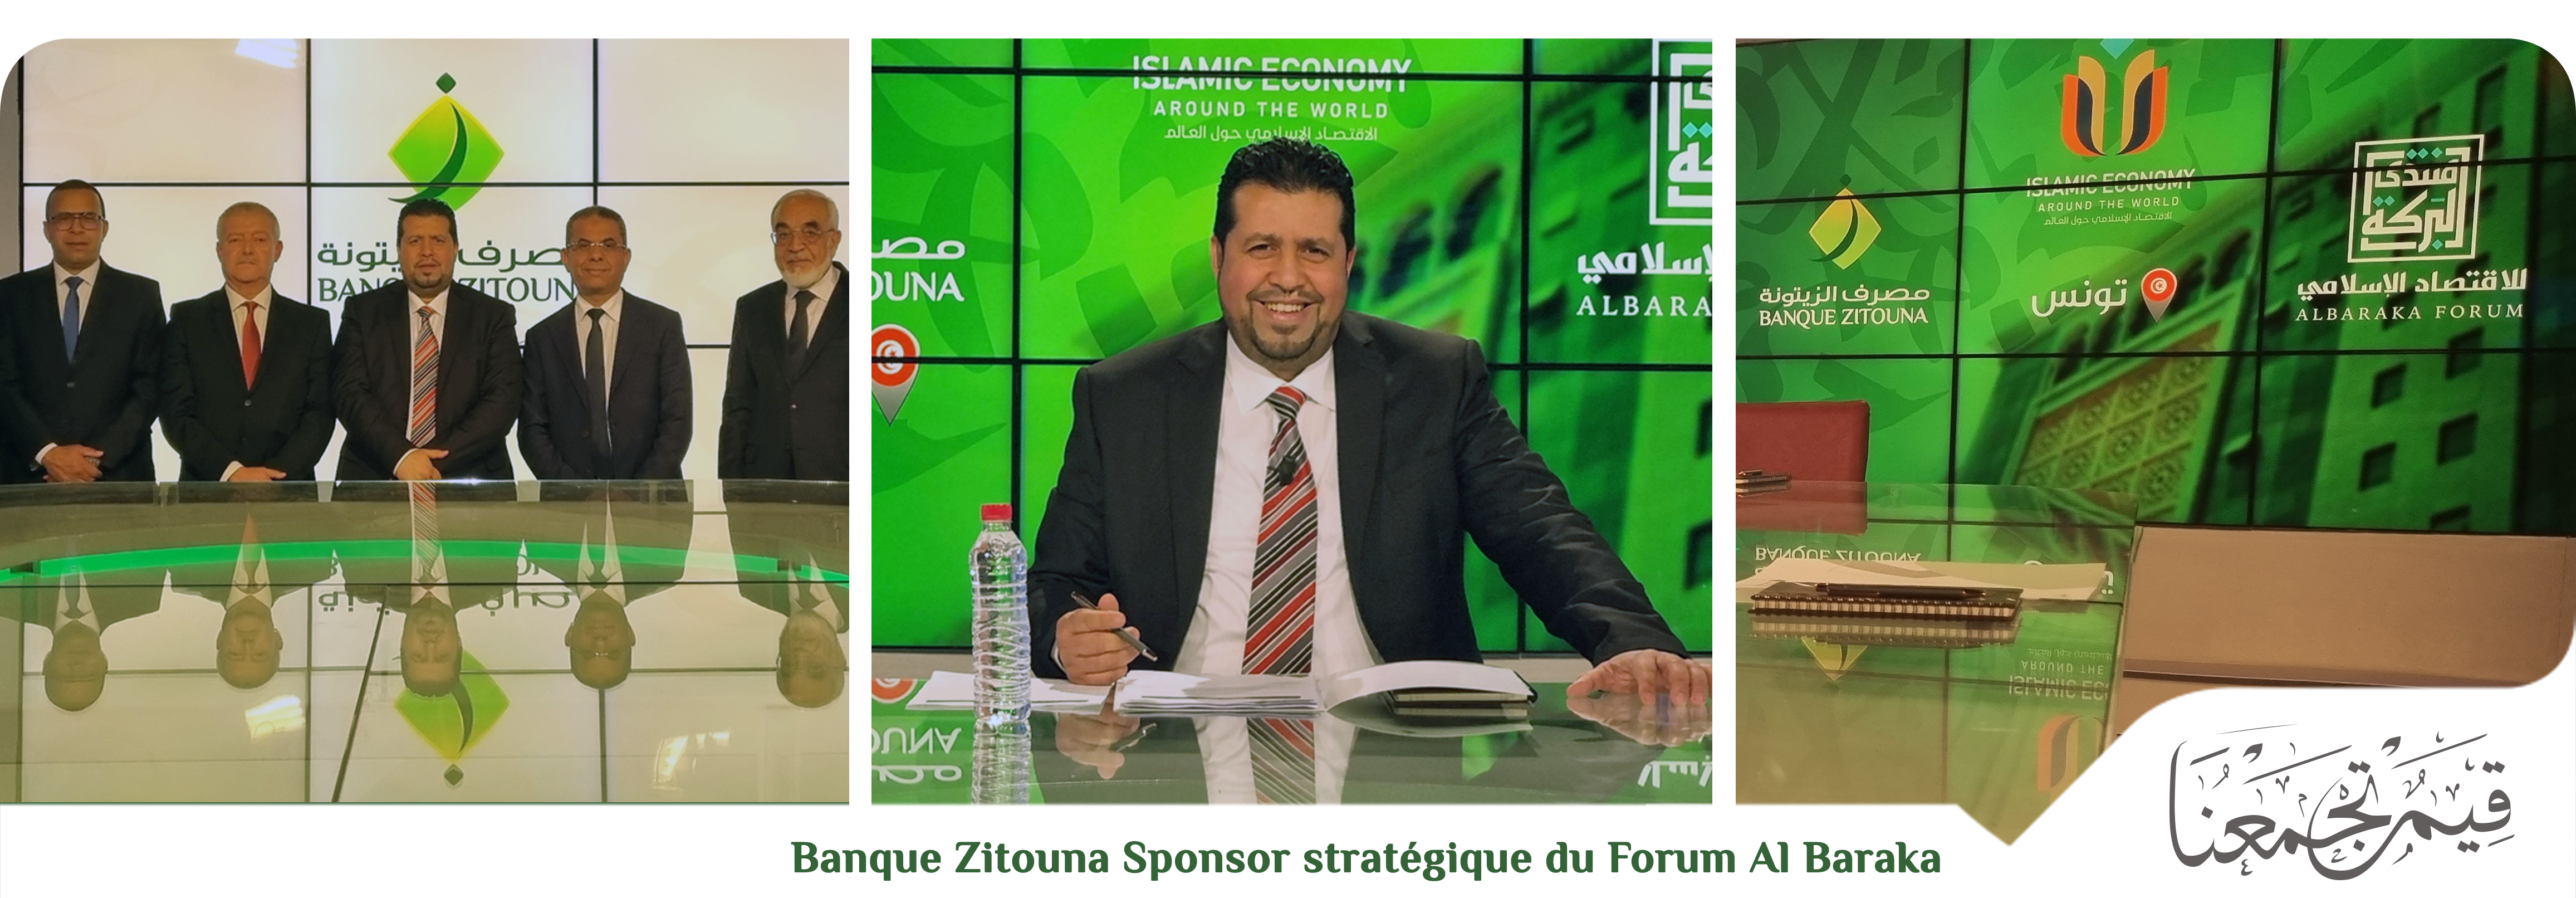 Banque Zitouna partenaire Stratégique du Forum AlBaraka pour l’Economie Islamique